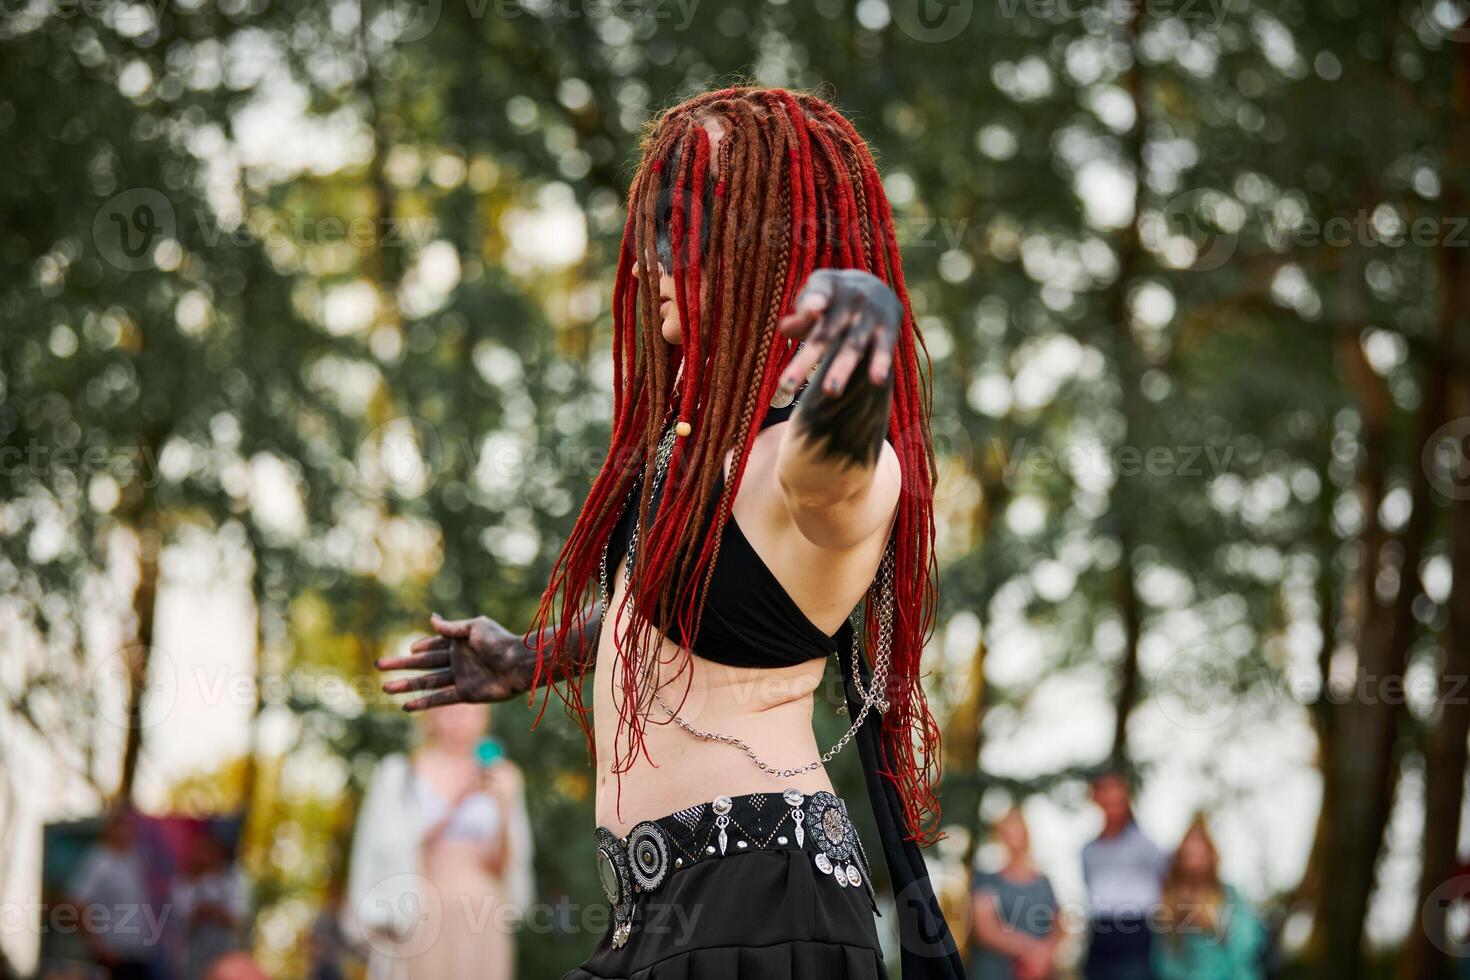 mythologique dansant fille faune sur vert pelouse dans Publique parc Extérieur art dansant un événement photo